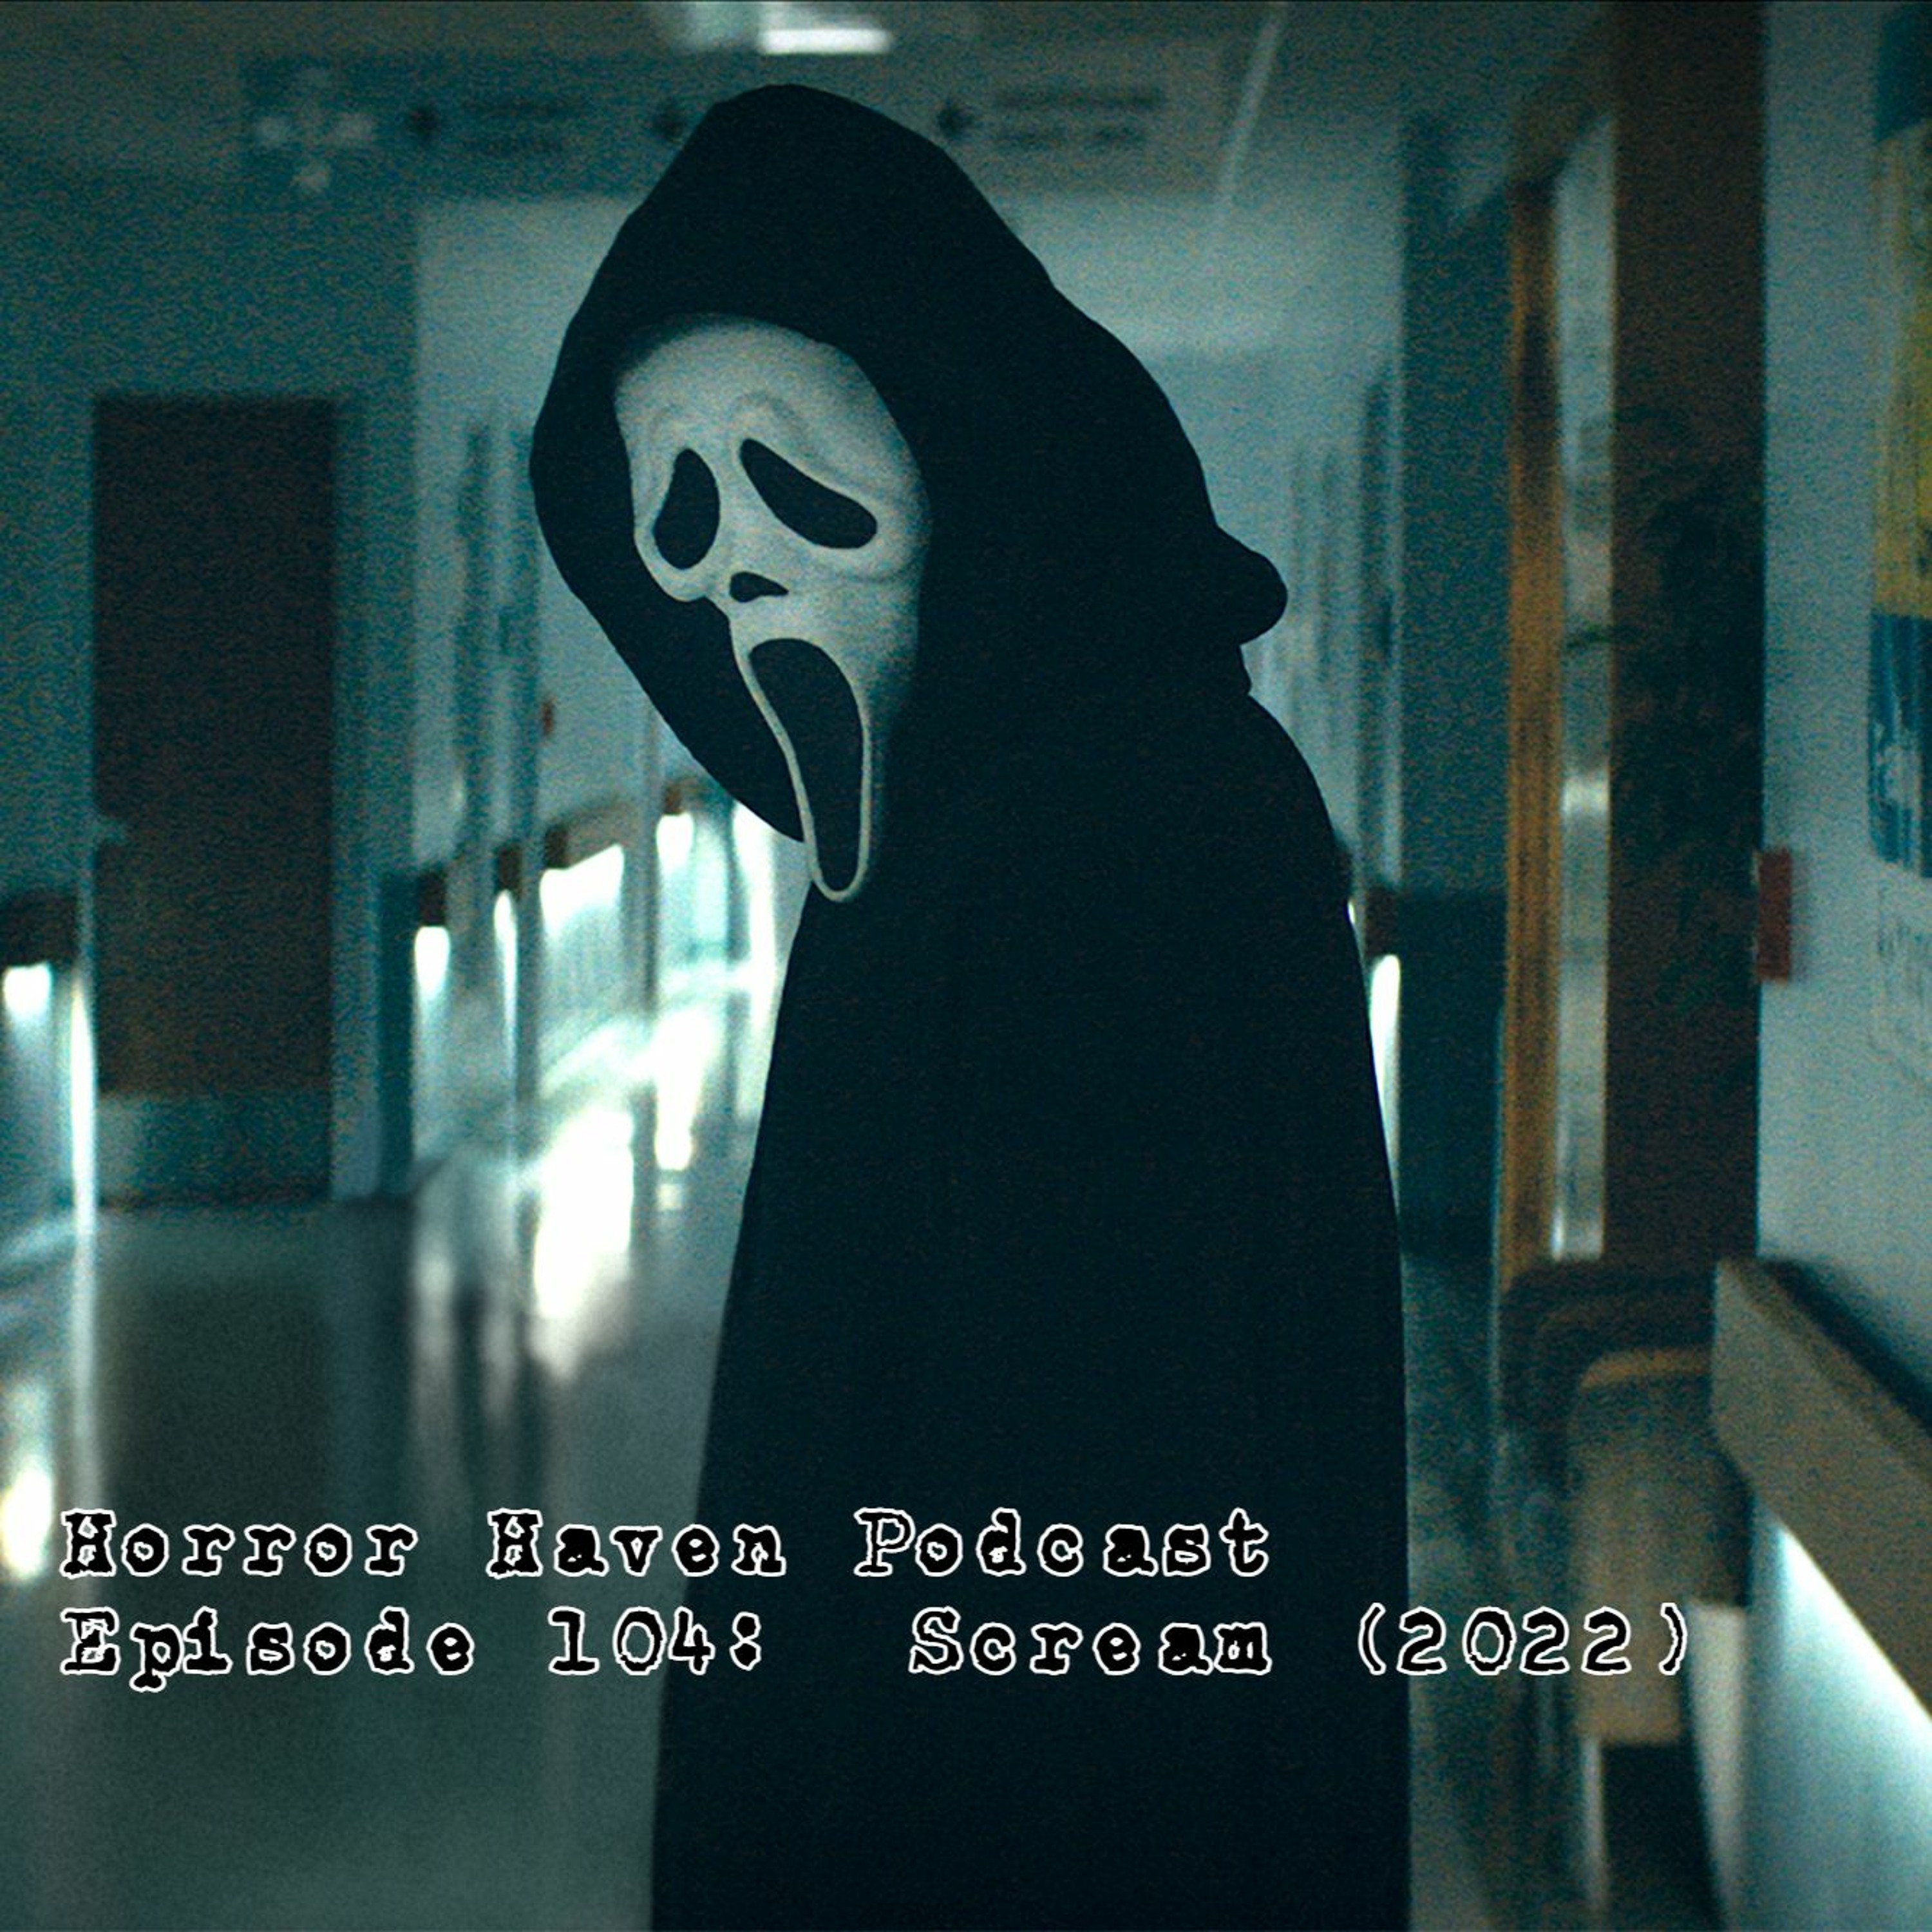 Episode 104:  Scream (2022)